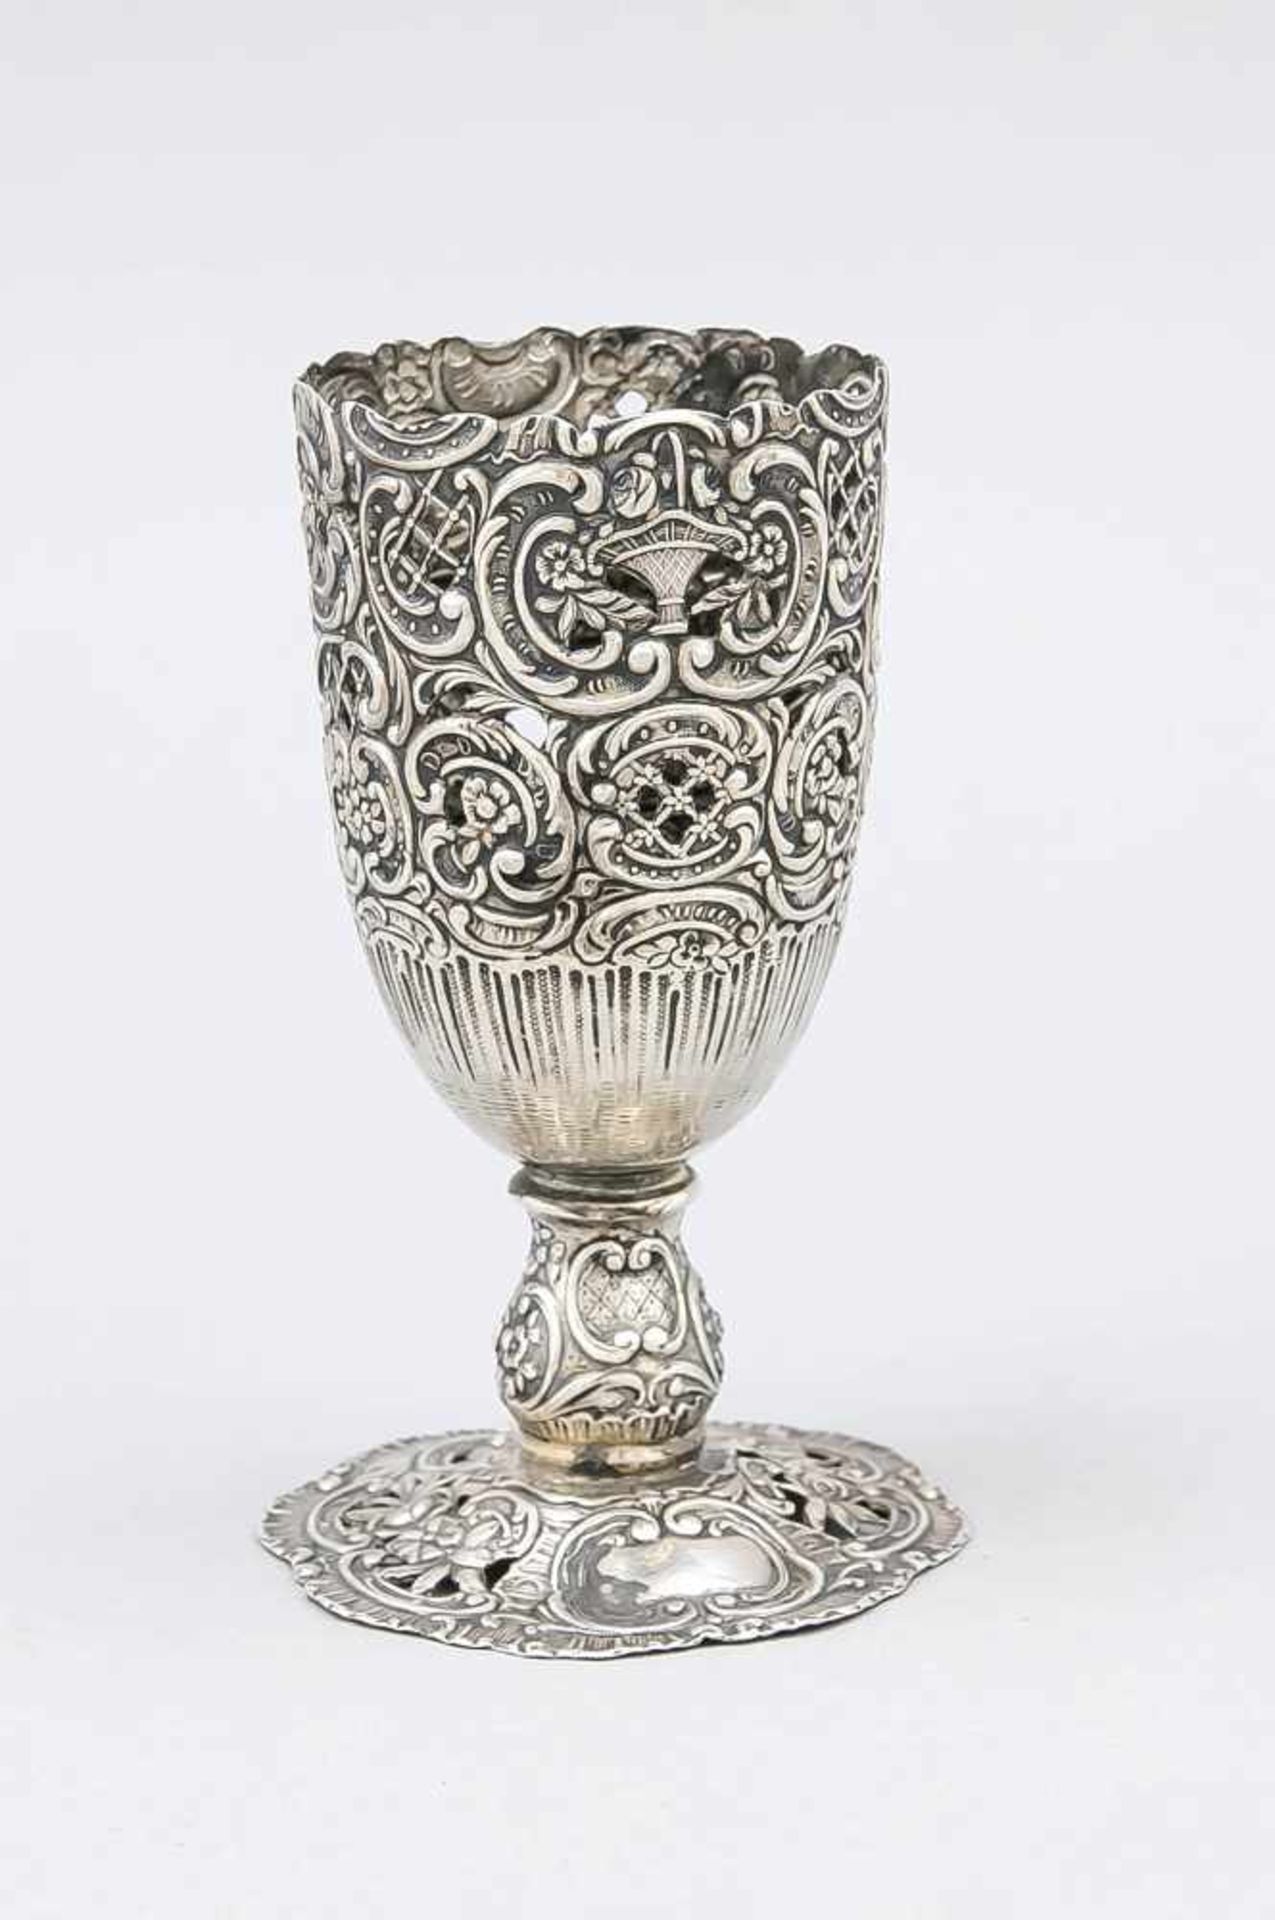 Vase, 20. Jh., wohl Hanau, Silber 800/000, runder passig geschweifter Stand, kurzerSchaft, gerader